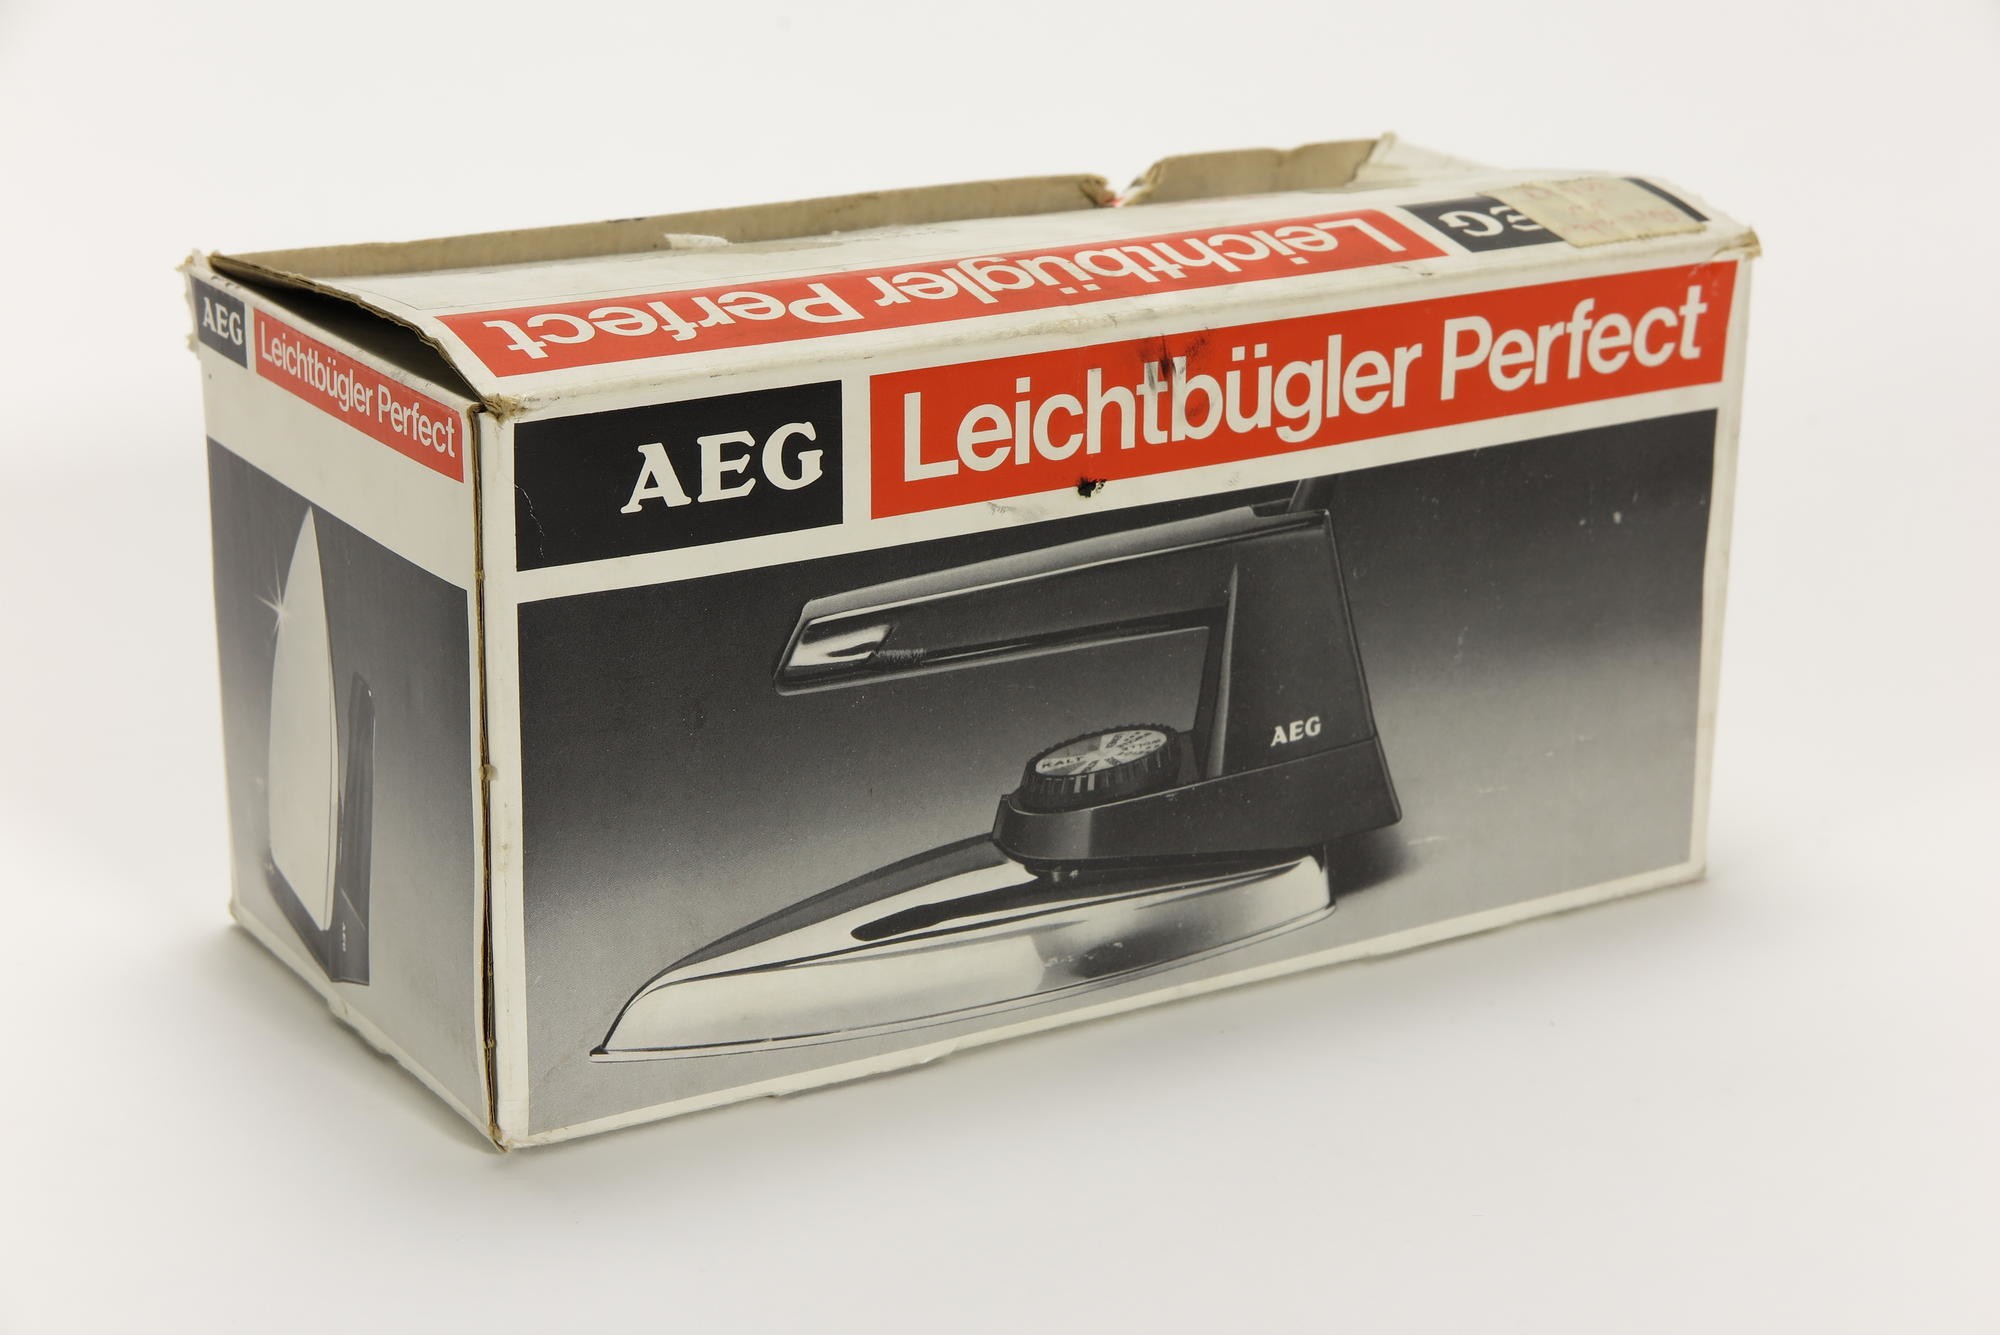 Verpackungskarton, Zubehör zu Elektrisches Bügeleisen AEG Leichtbügler Typ Perfect L (Stiftung Deutsches Technikmuseum Berlin CC0)